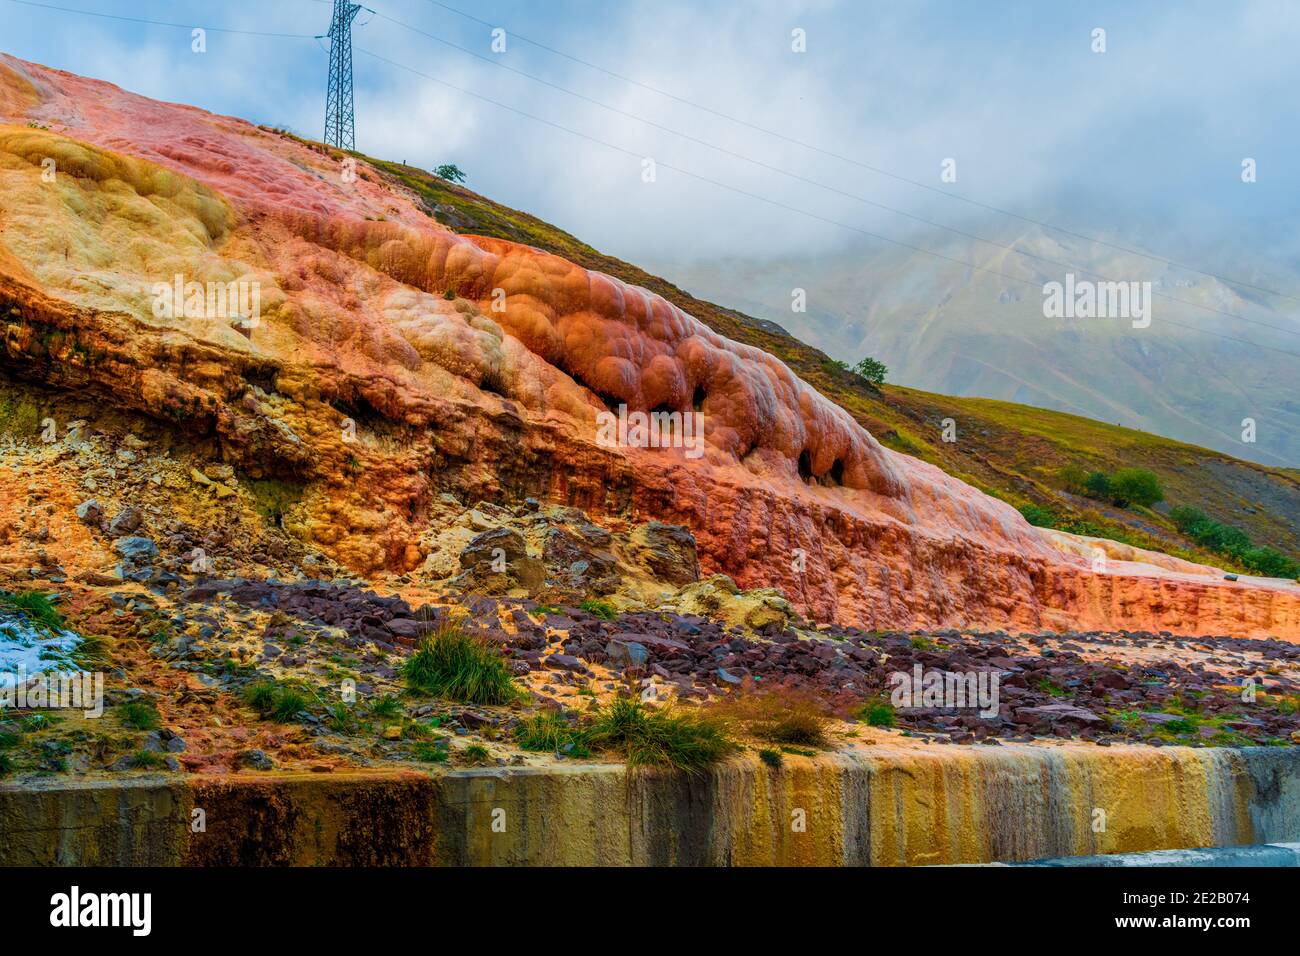 Brauner, oranger Sandstein, der Wasser bildete, fließt noch Wasser durch ihn. Eine Art Karstphänomen auf dem Pass Jvari im Norden Georgiens. Kazbegi Natur Stockfoto